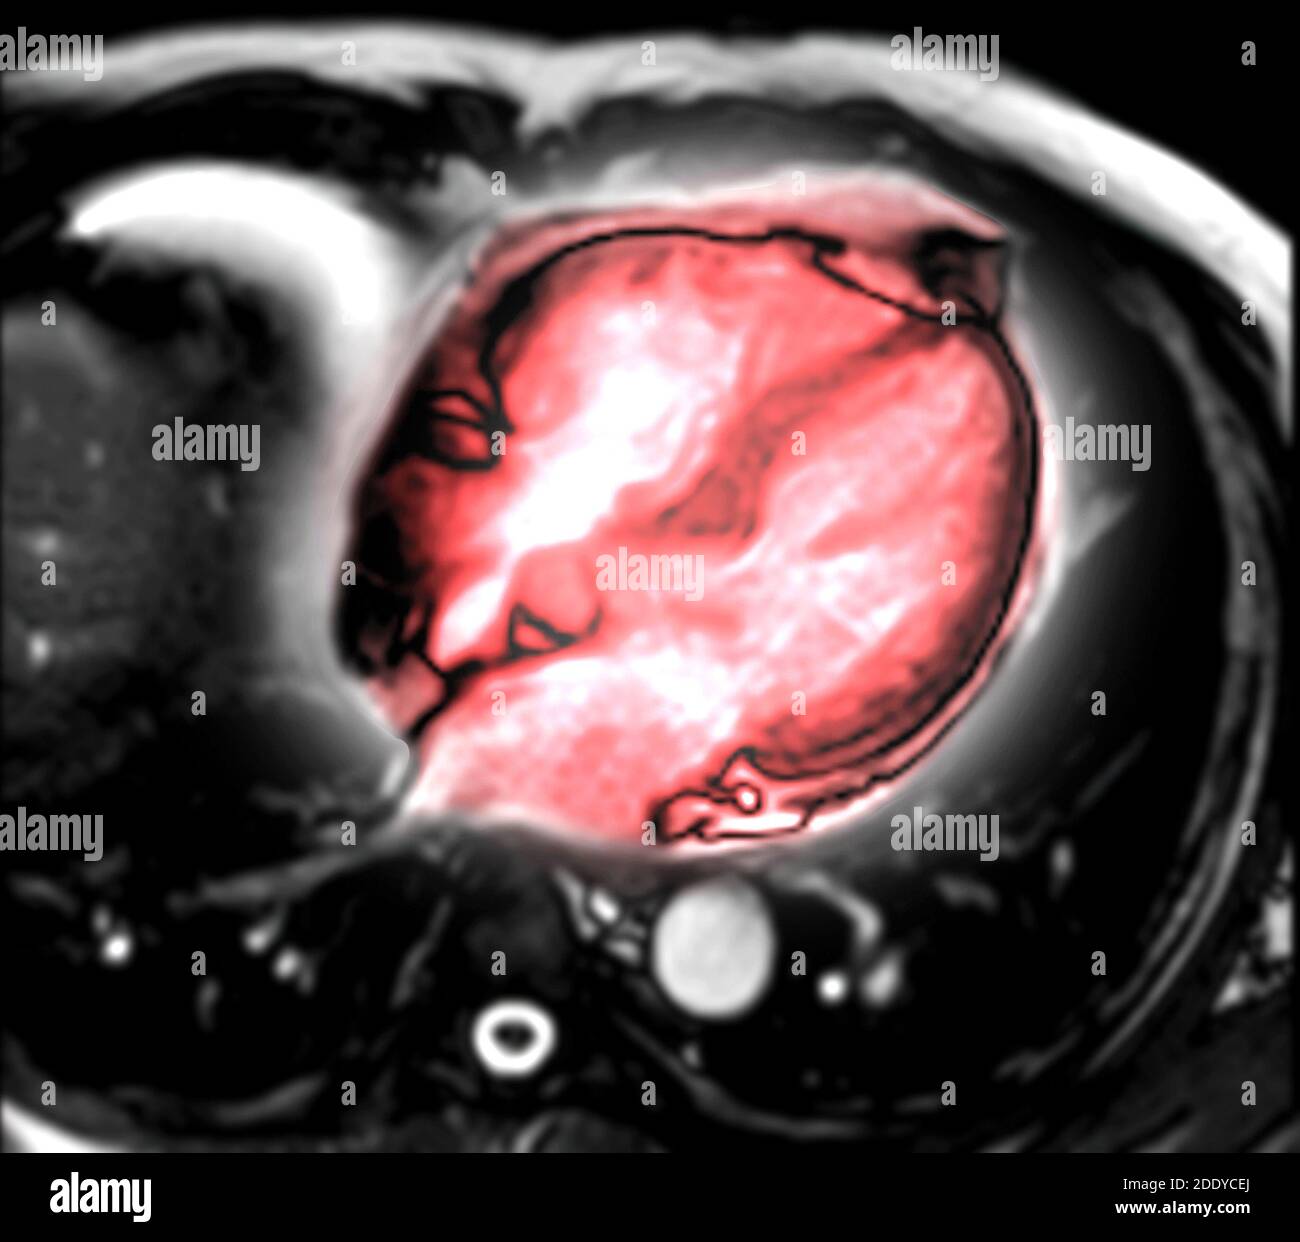 IRM del corazón o del corazón IRM ( imágenes por resonancia magnética ) de la vista del eje vertical del corazón que muestra 4 cámaras del corazón para el diagnóstico de enfermedad cardíaca. Foto de stock